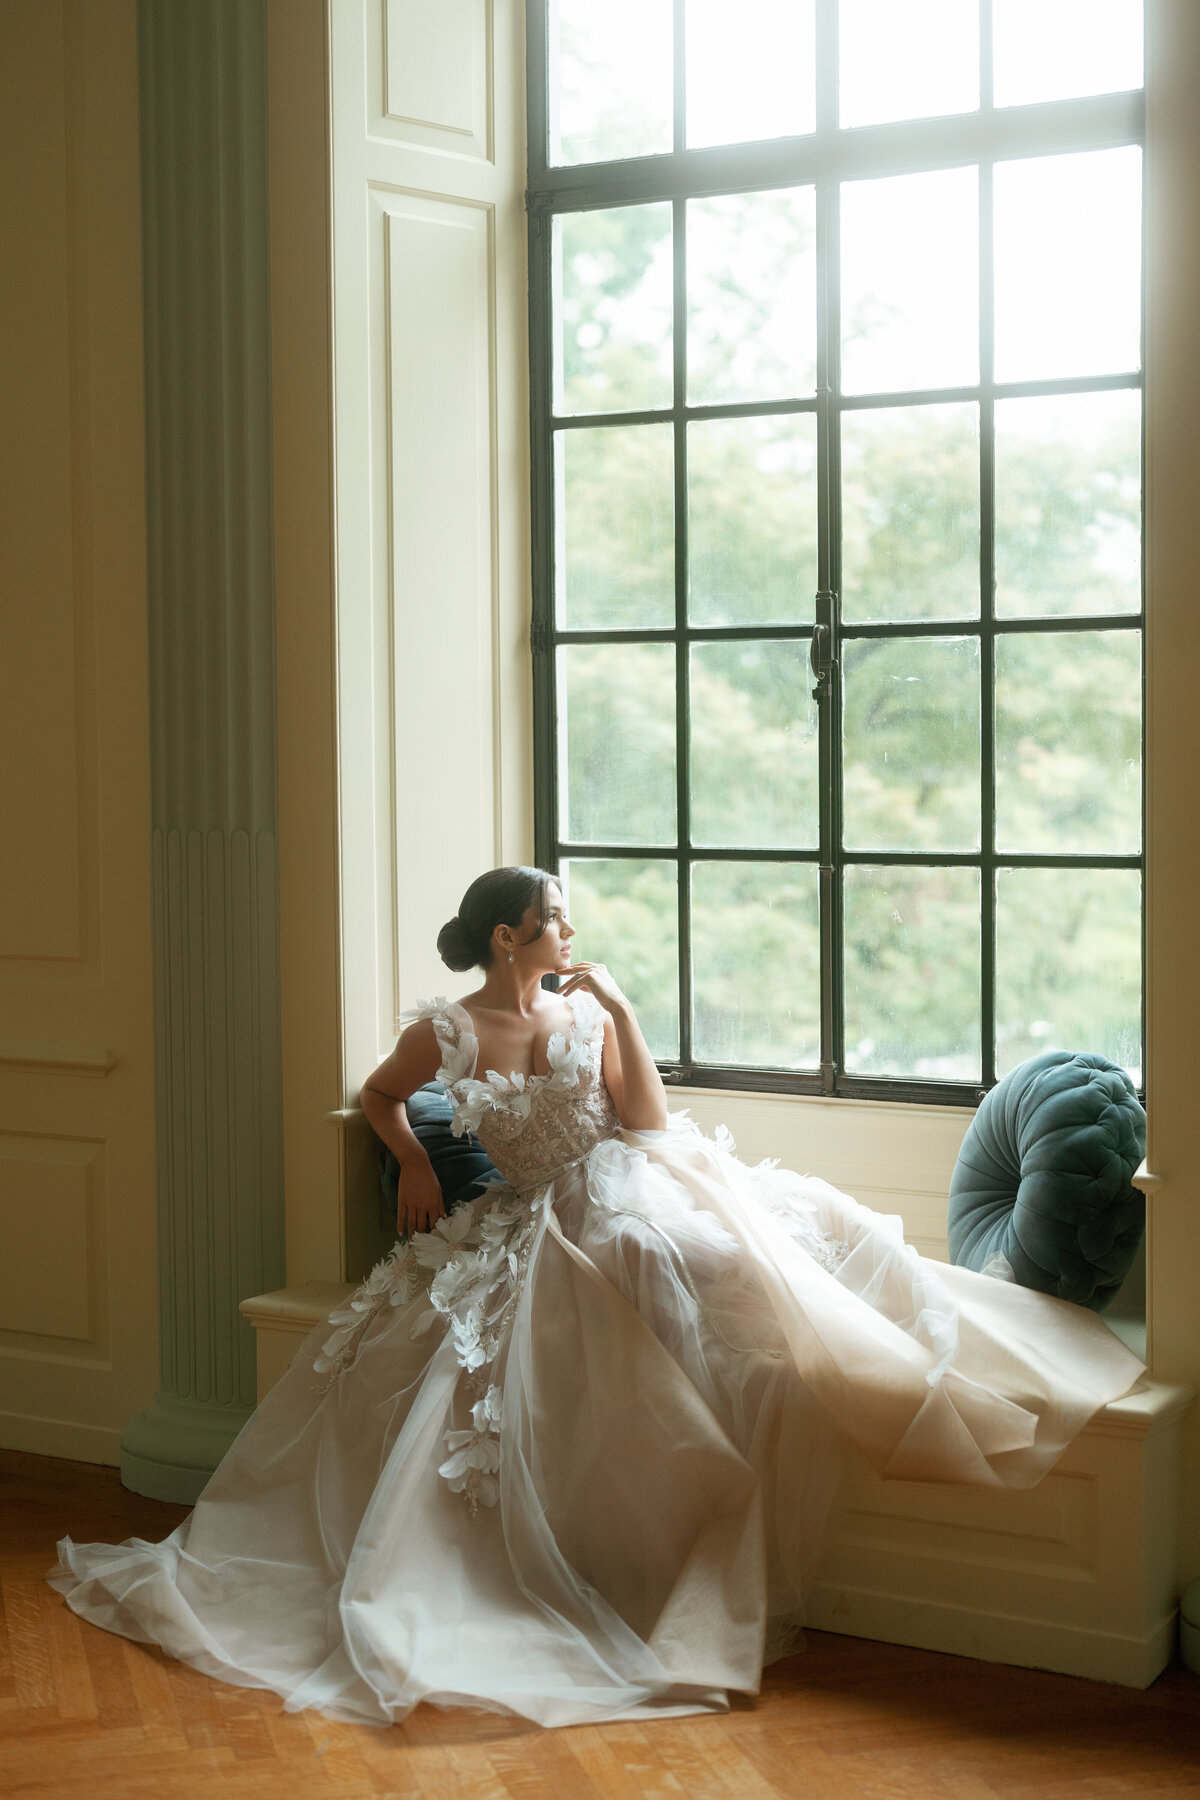 Portrait of a bride in a window